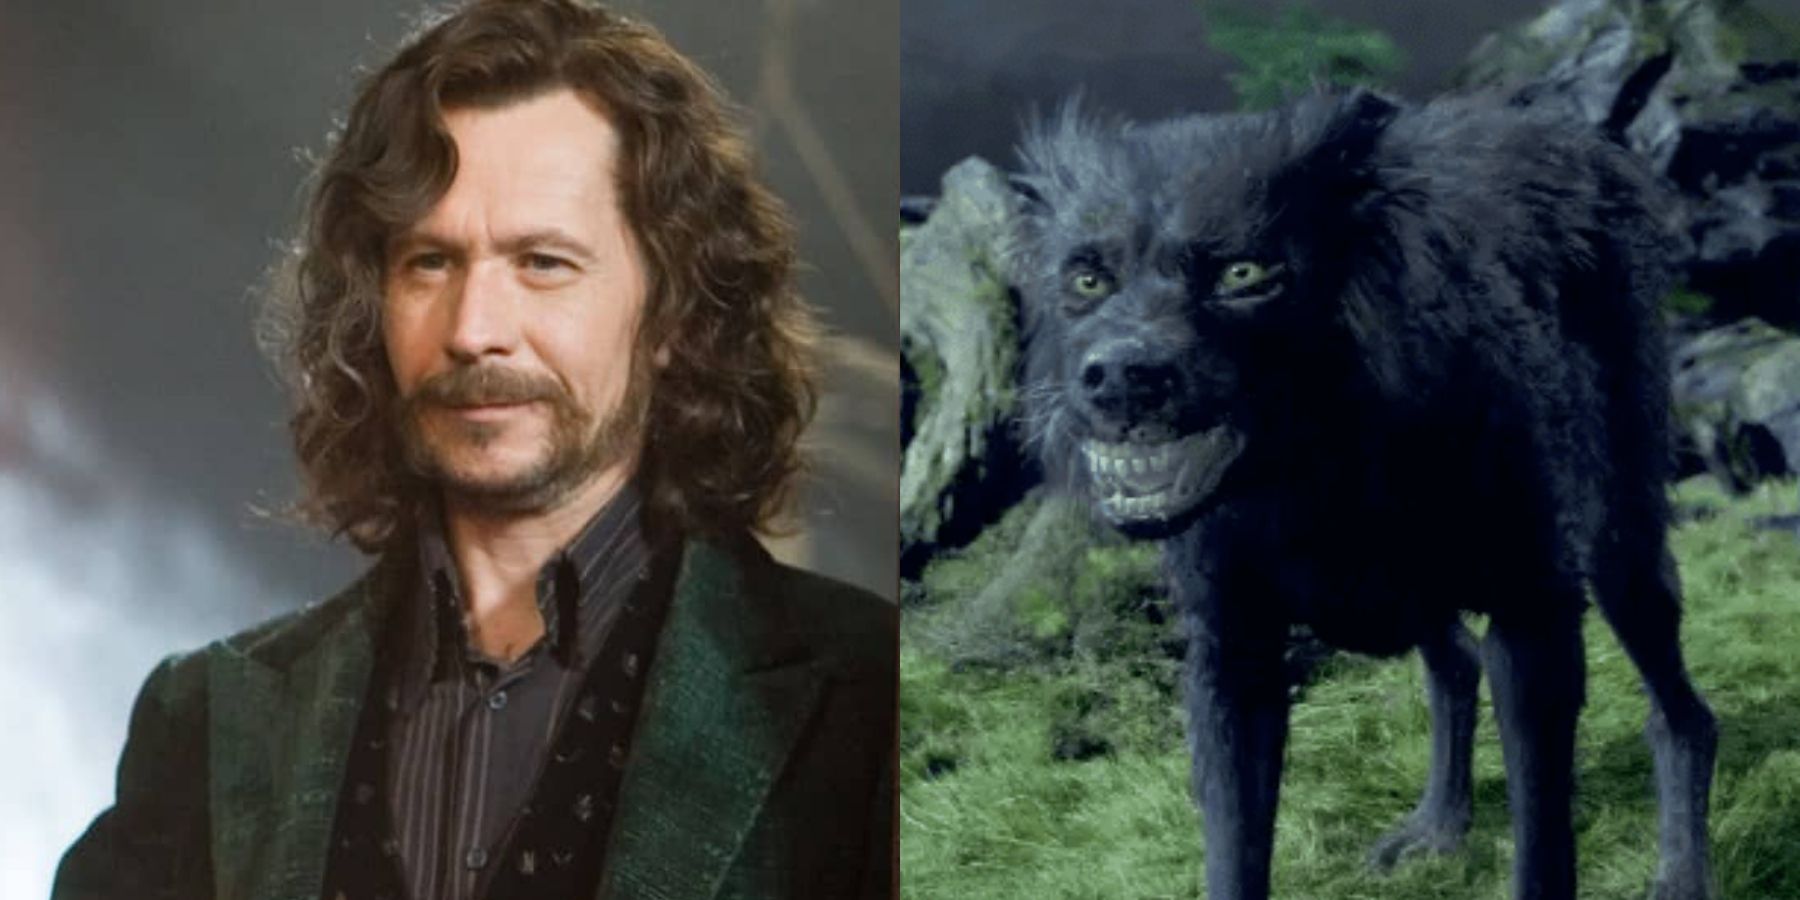 Pop! Movies: Harry Potter - Sirius Black (As Dog)